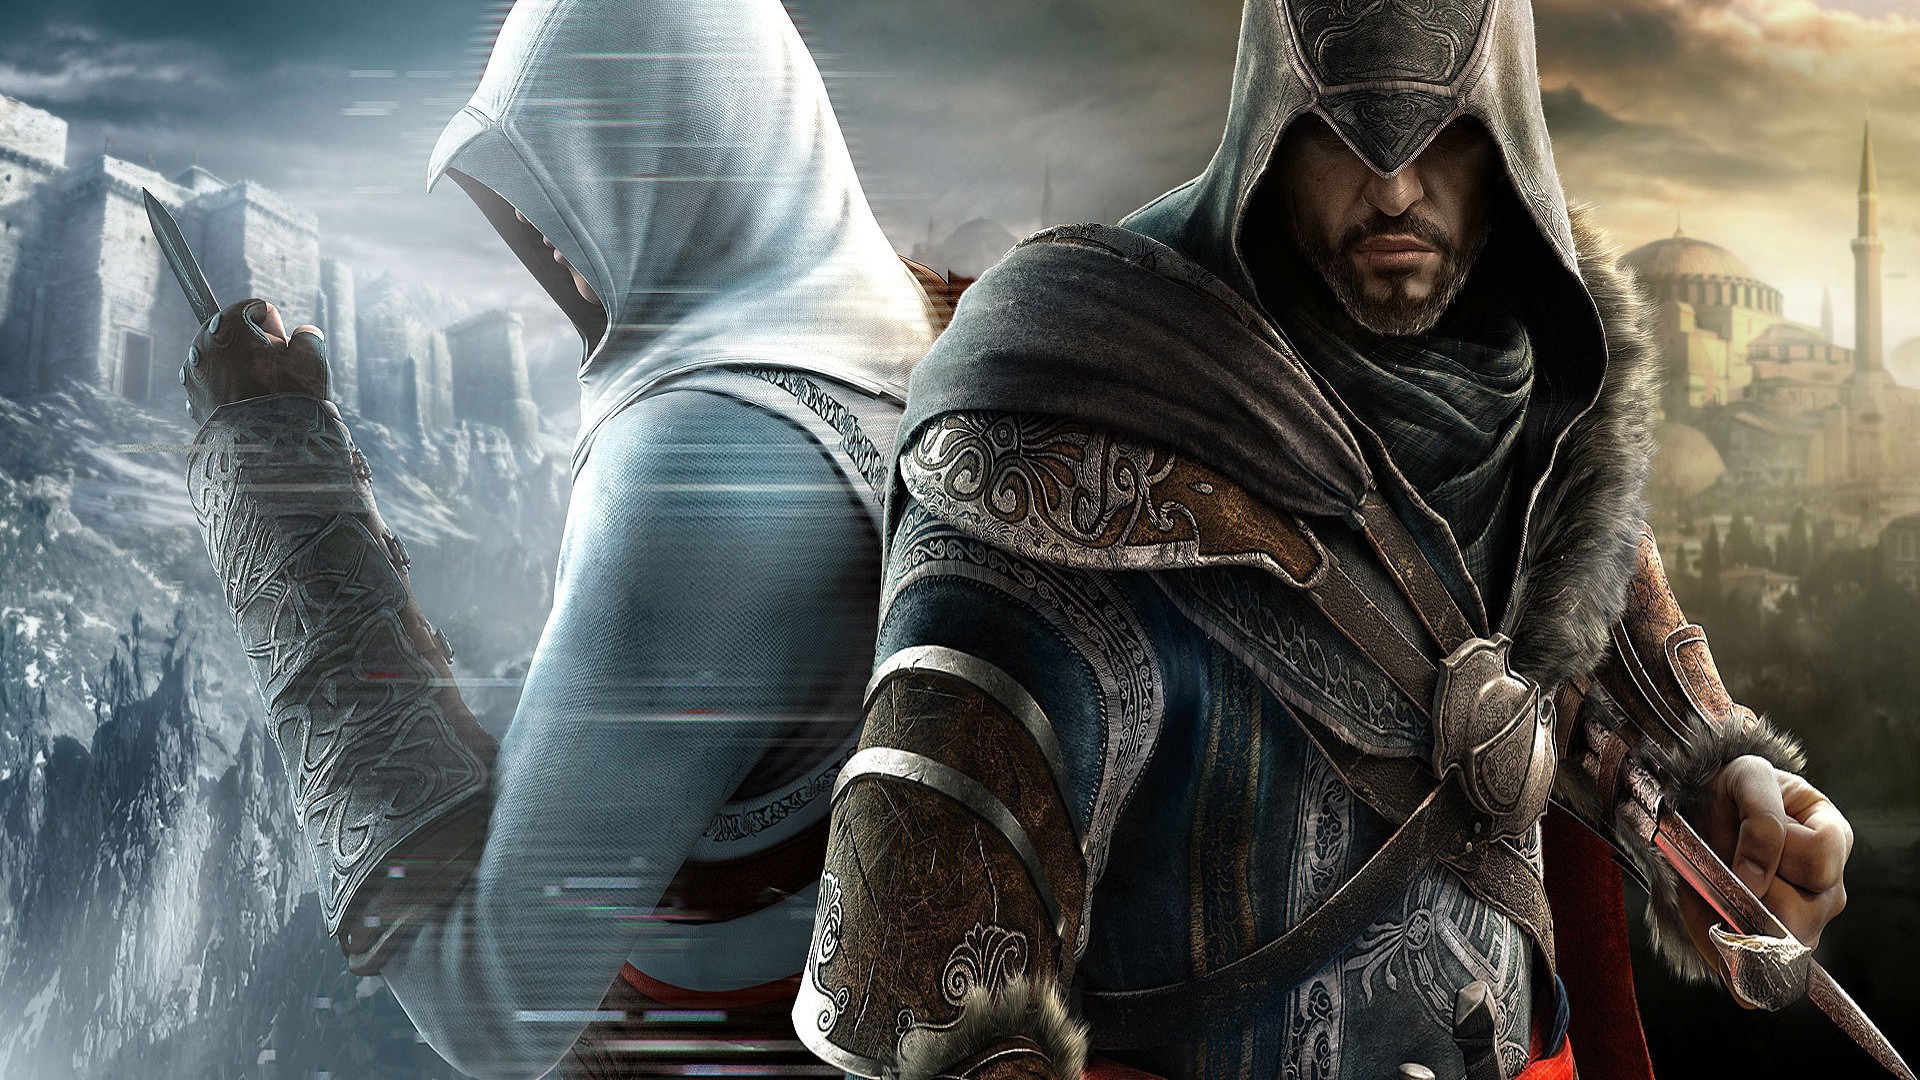 видеоигры, Assassins Creed, 3D (трехмерный) - обои на рабочий стол